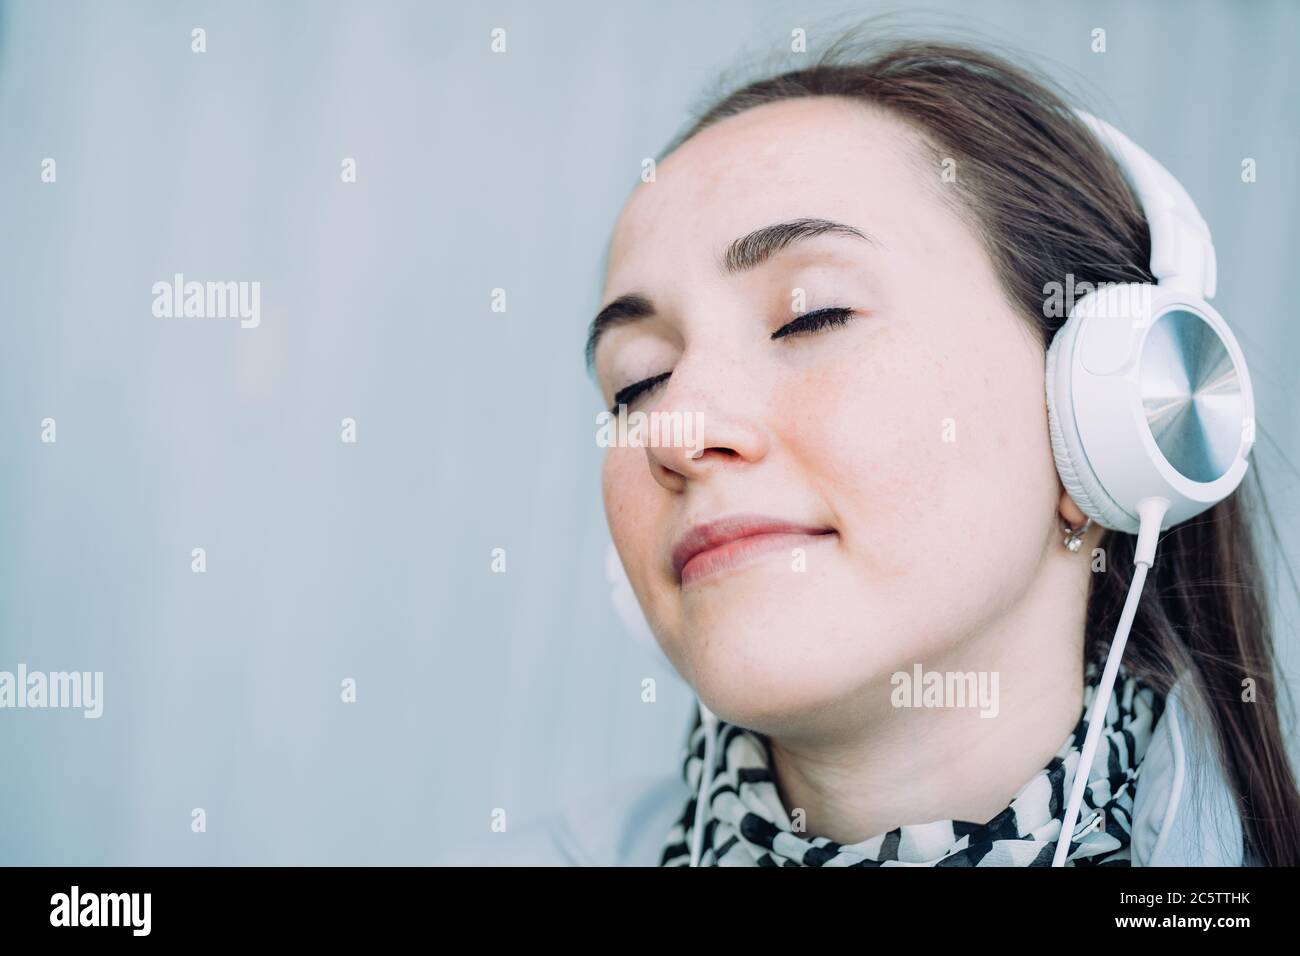 Une jeune fille de race blanche sourit et écoute de la musique avec les yeux fermés Banque D'Images